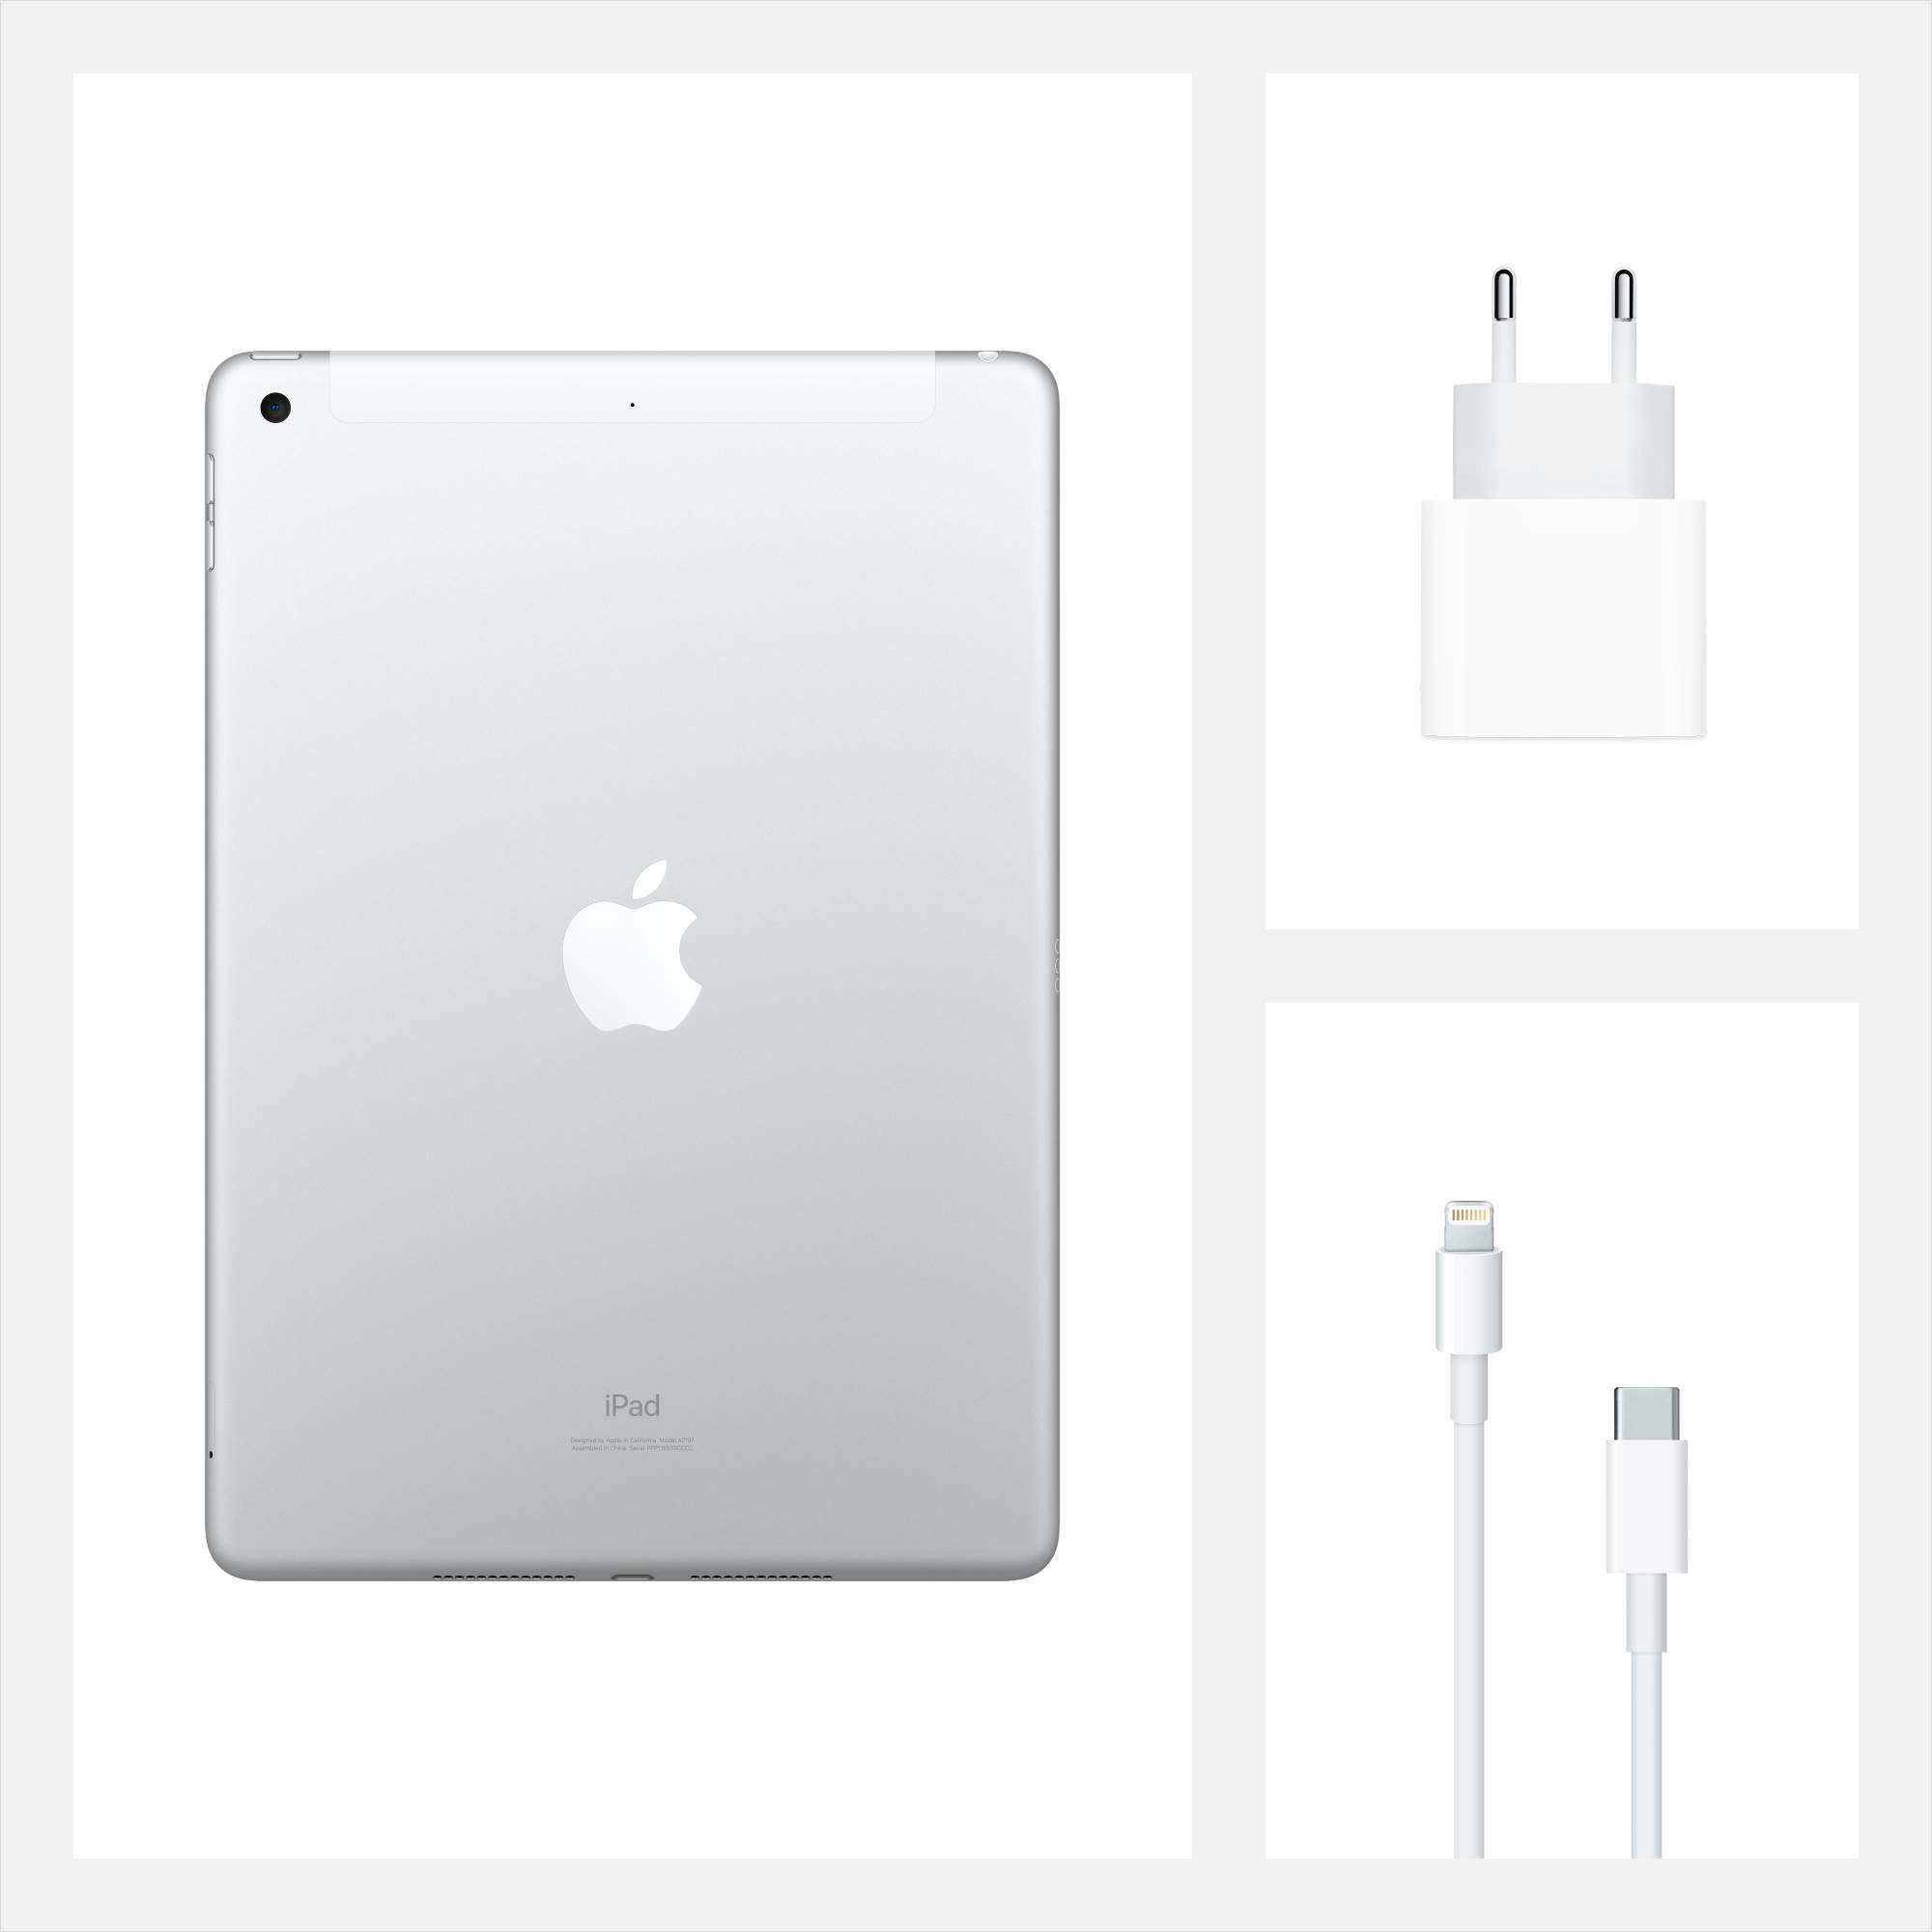 Планшет Apple iPad (2020) 128GB Wi-Fi+Cellular Silver (MYMM2RU/A)